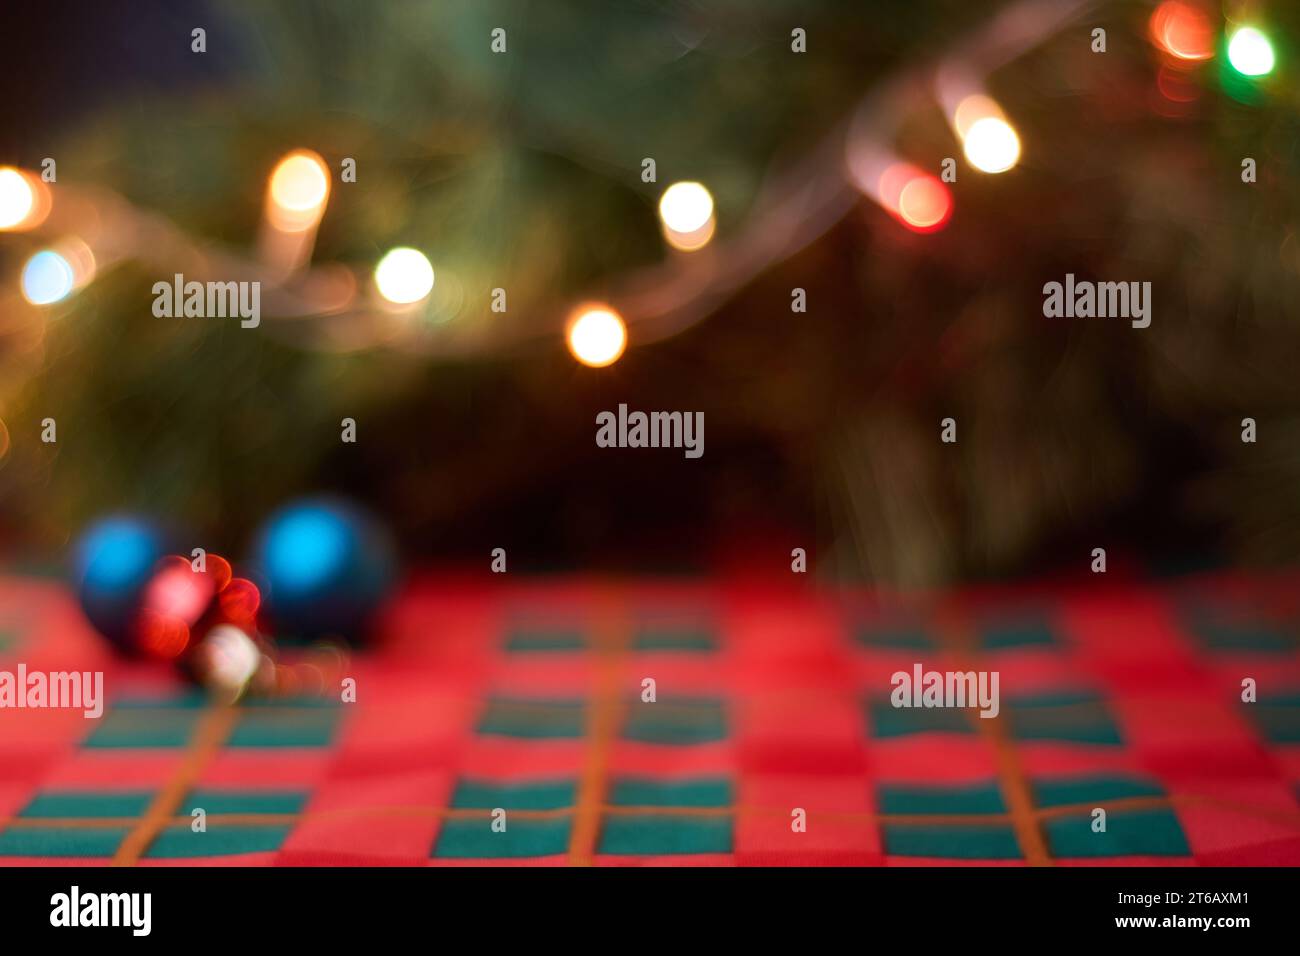 Sfondo natalizio orizzontale con decorazioni natalizie sfocate sul tavolo con tovaglie verdi e rosse, palle natalizie, albero e luci. Spazio copia f Foto Stock